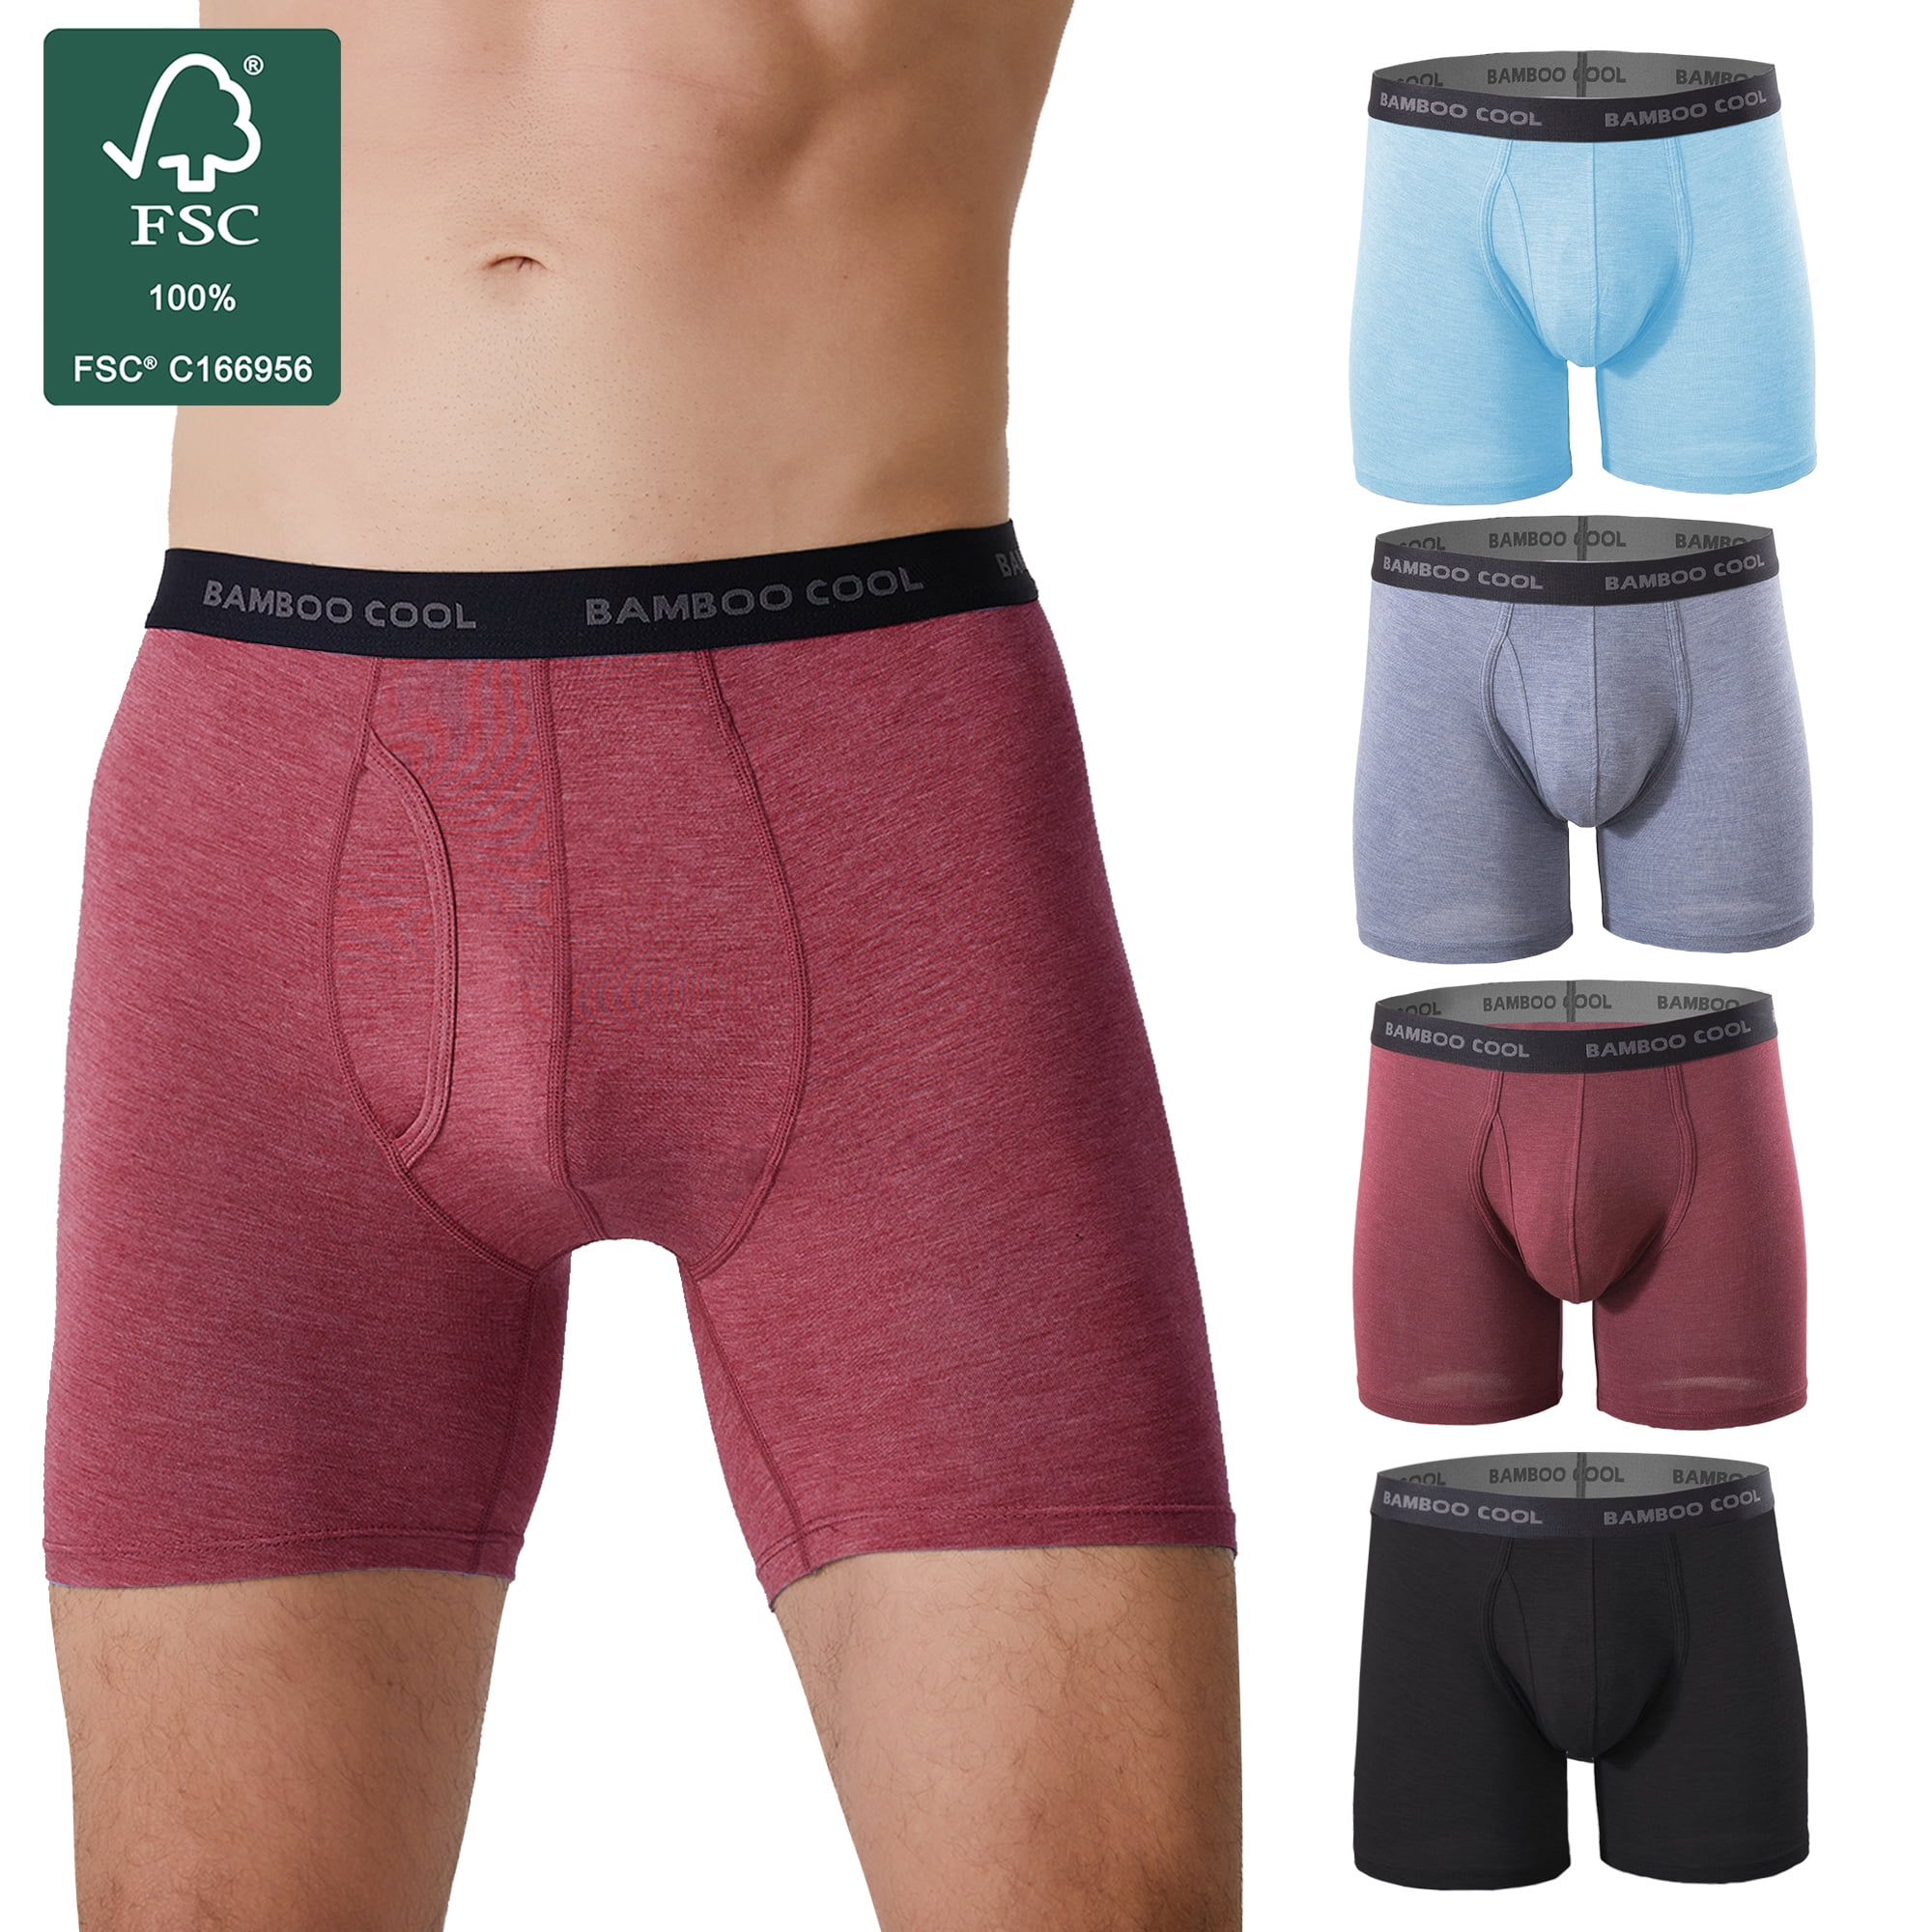 Bamboo Underwear - Wide selection of underwear styles - AliExpress